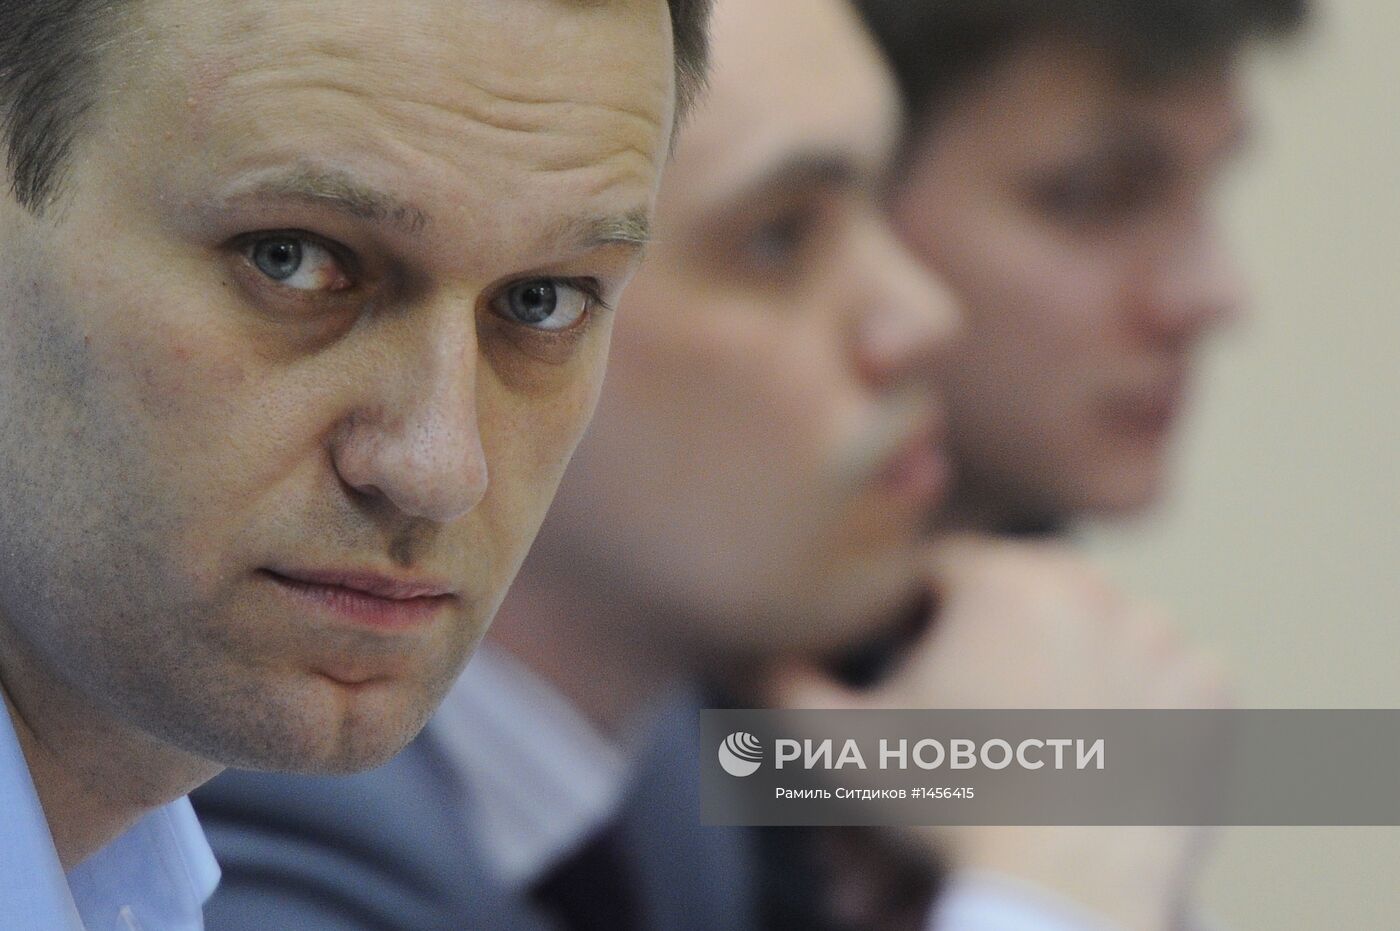 Суд вновь приступил к рассмотрению дела о хищениях в "Кировлесе"